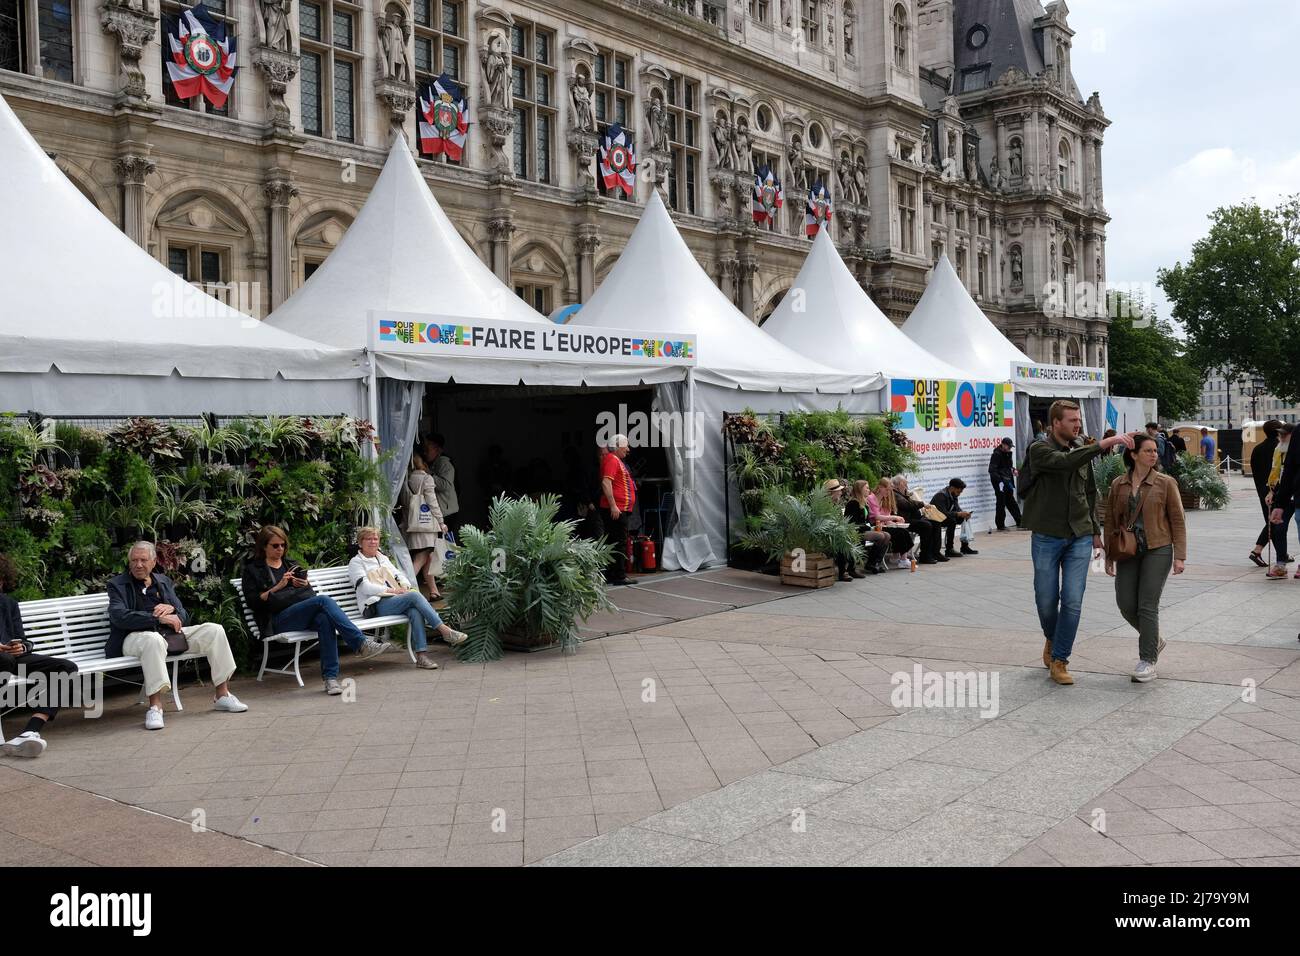 Le samedi 7 mai, une Journée de l'Europe a été organisée sur la place en face de l'Hôtel de ville de Paris, avec des stands pour les ONG et une salle de conférence Banque D'Images